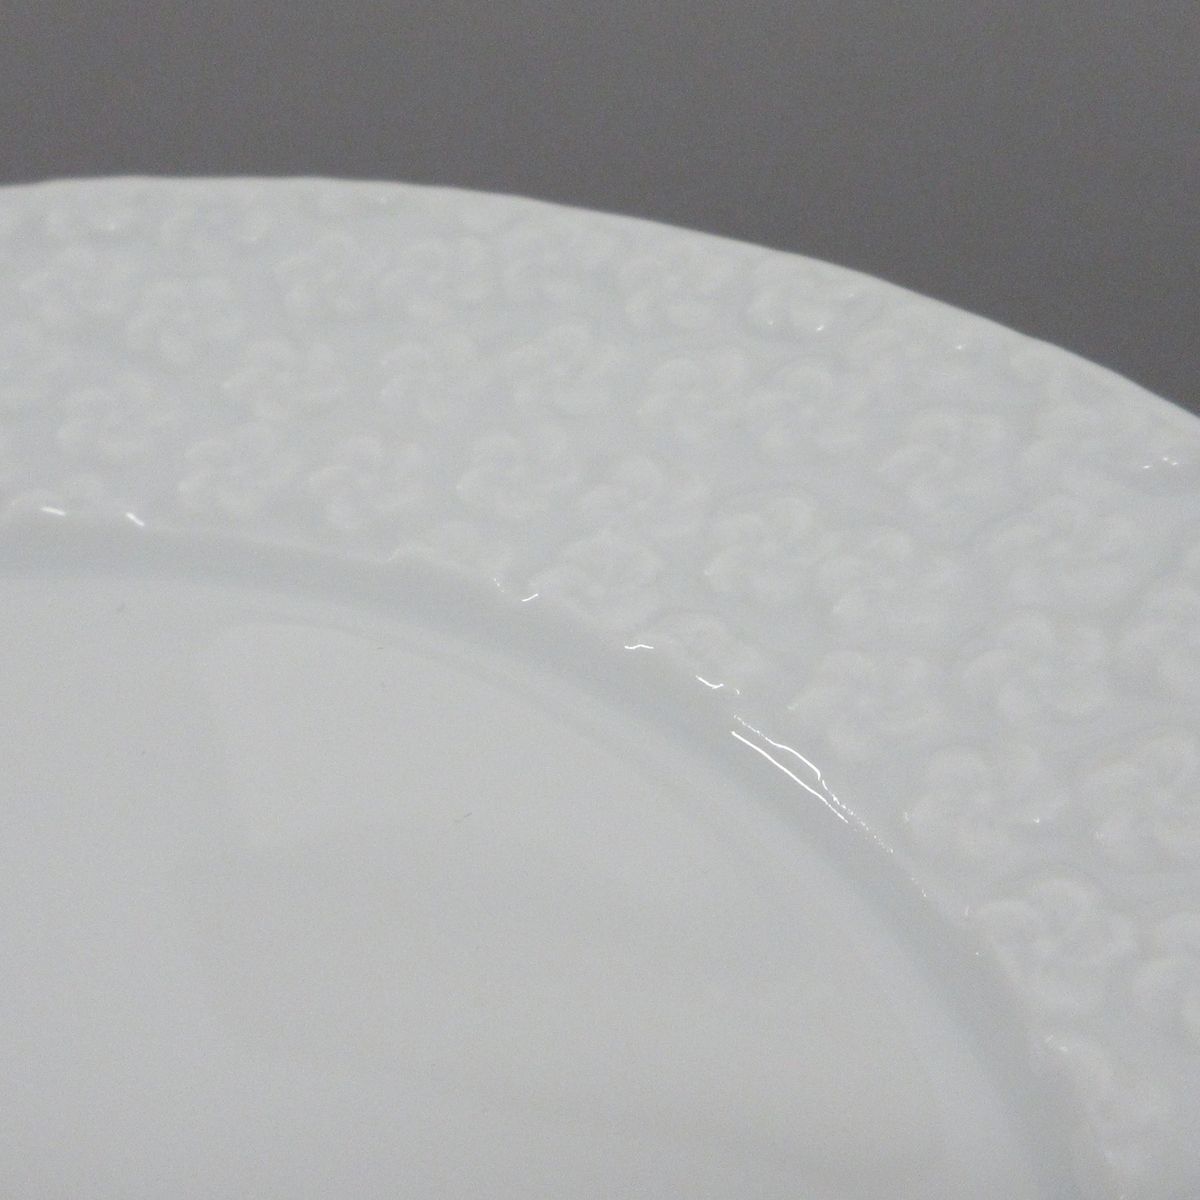 Meissen(マイセン) 食器新品同様 - 白 カップ&ソーサー×2点/プレート×2 